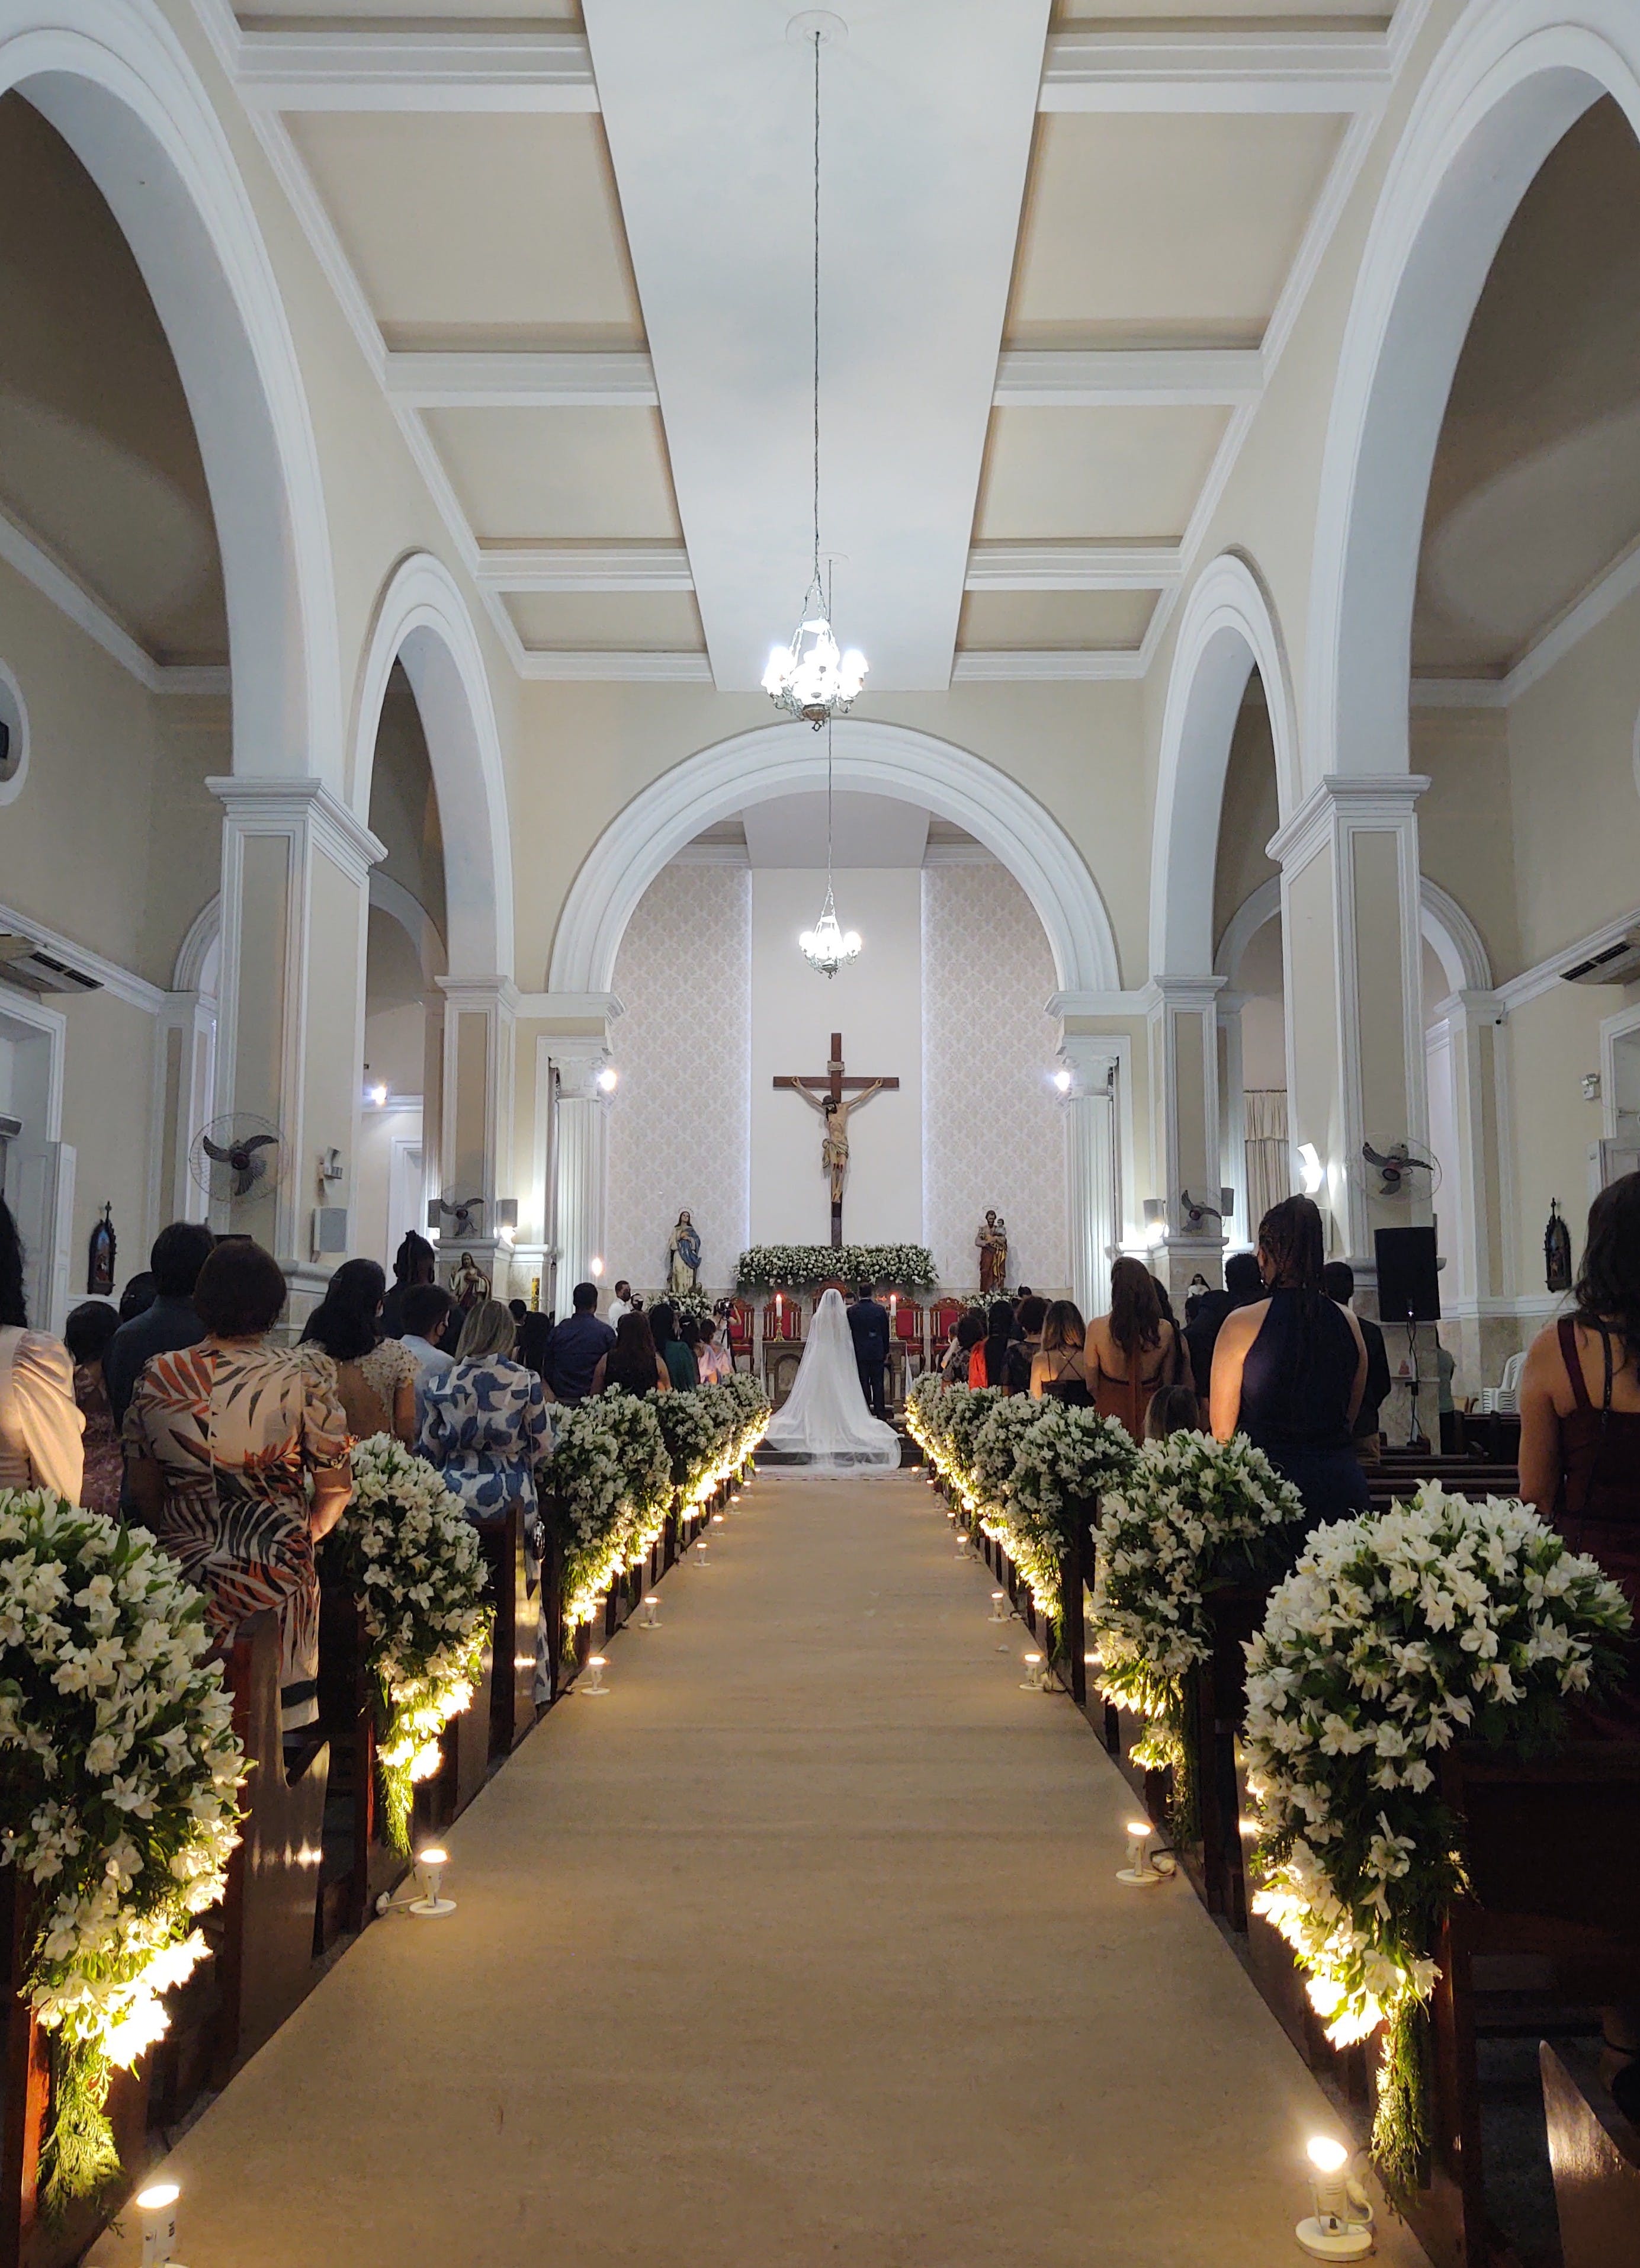 Eine Kirche, die für einen Hochzeitstag geschmückt und mit Menschen gefüllt ist | Quelle: Pexels